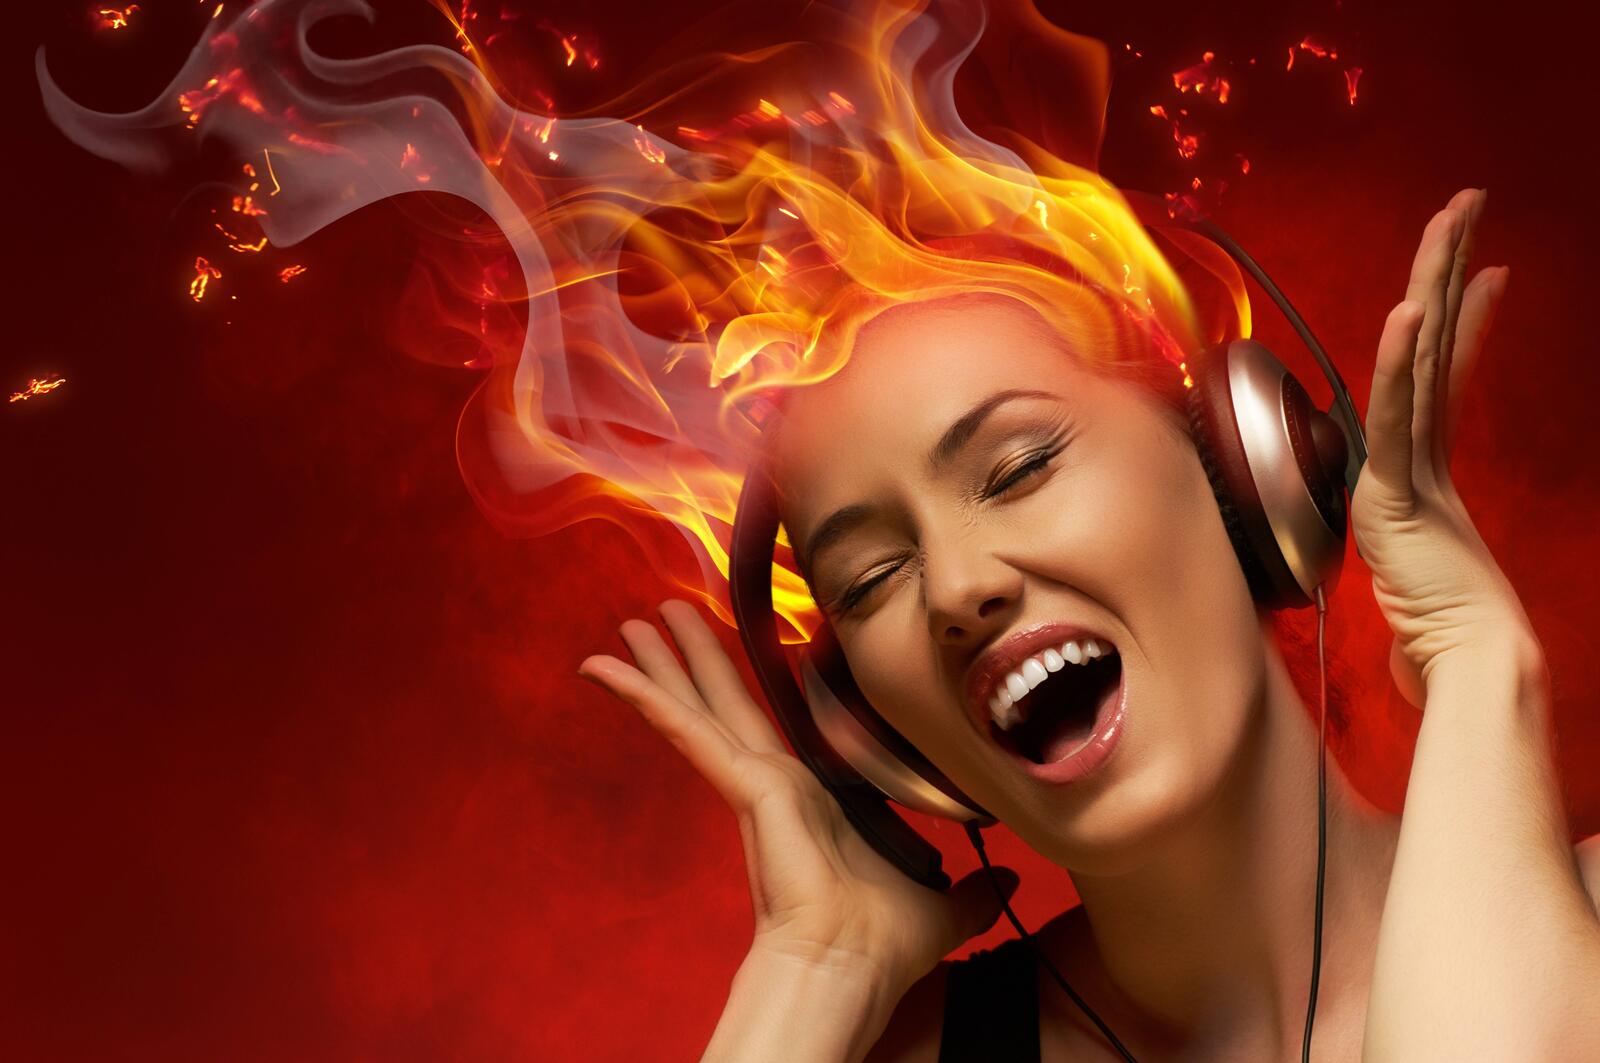 Wallpapers headphones disco girl fire on the desktop